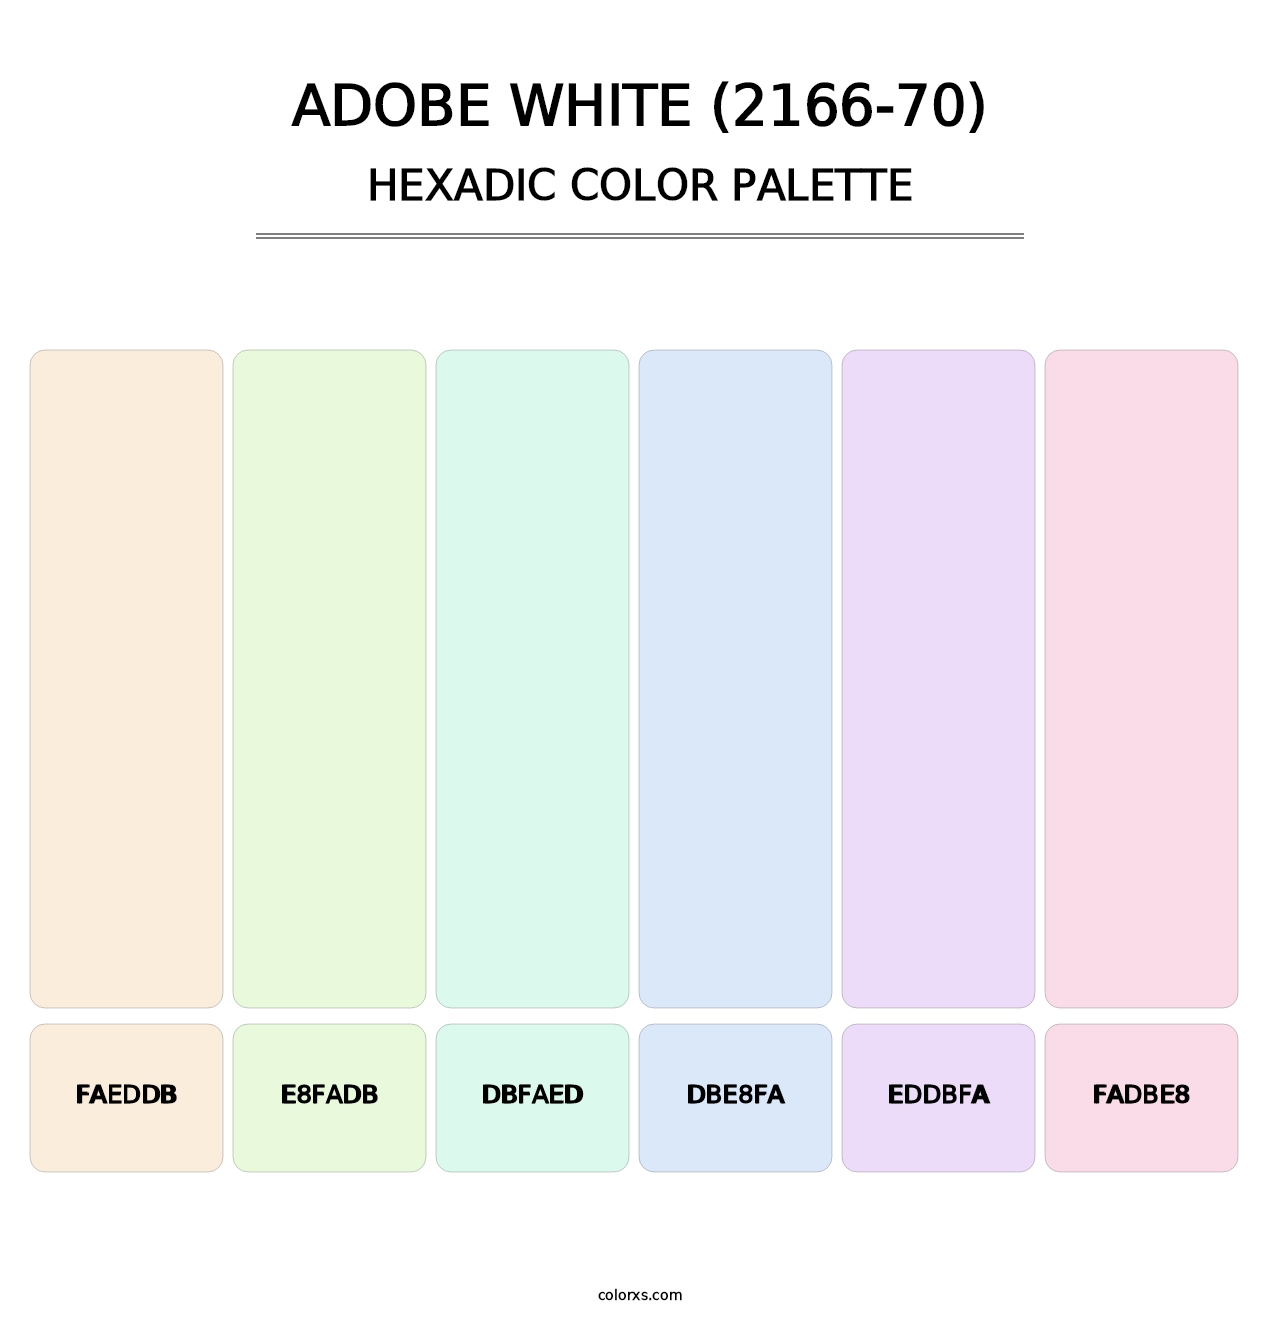 Adobe White (2166-70) - Hexadic Color Palette